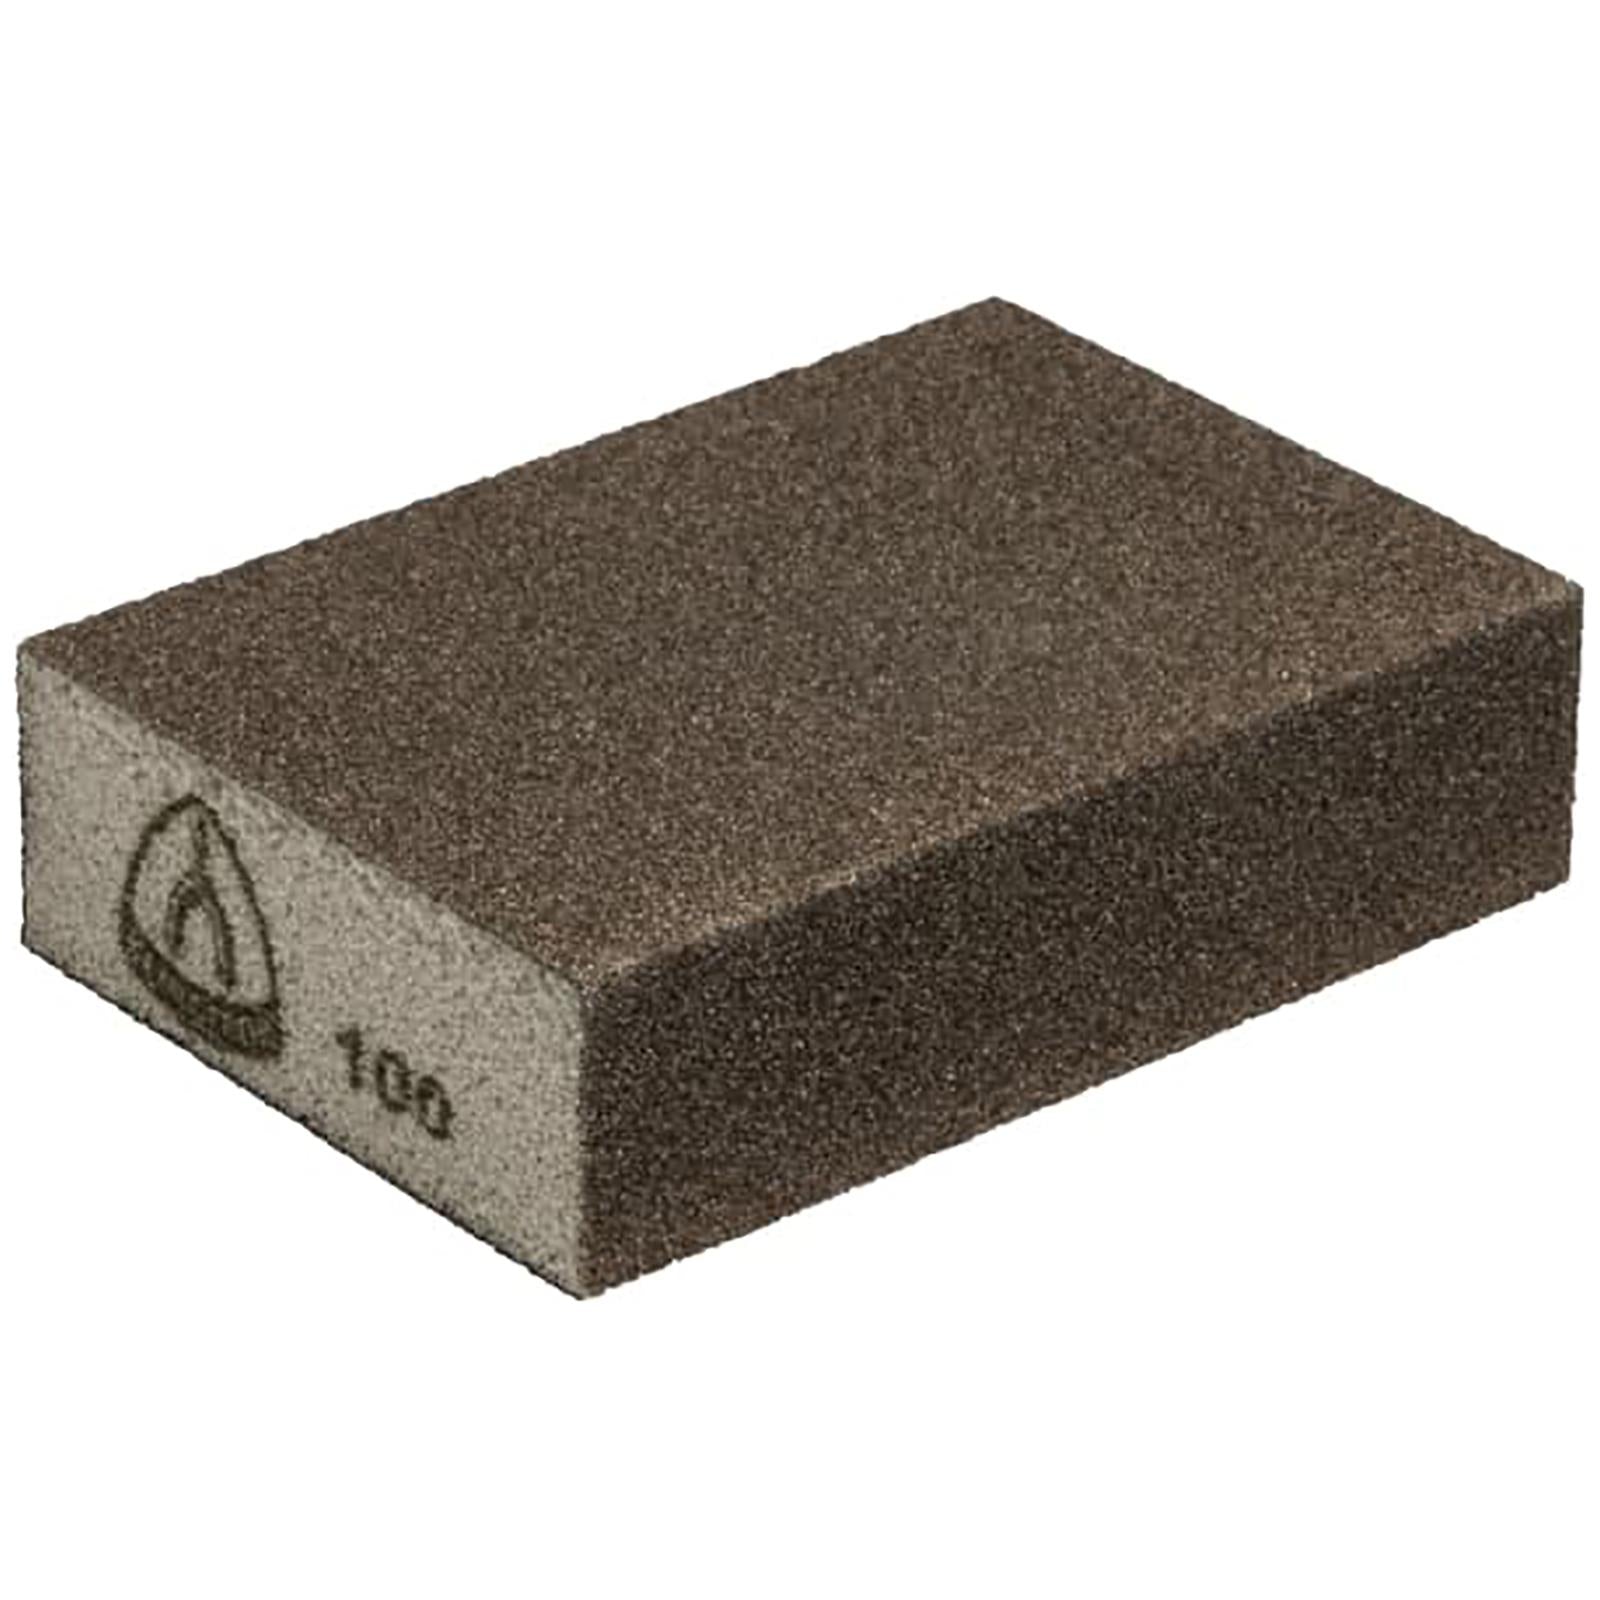 Klingspor Abrasive Block Sanding Sponge Aluminium Oxide 60-280 Grit SK 500